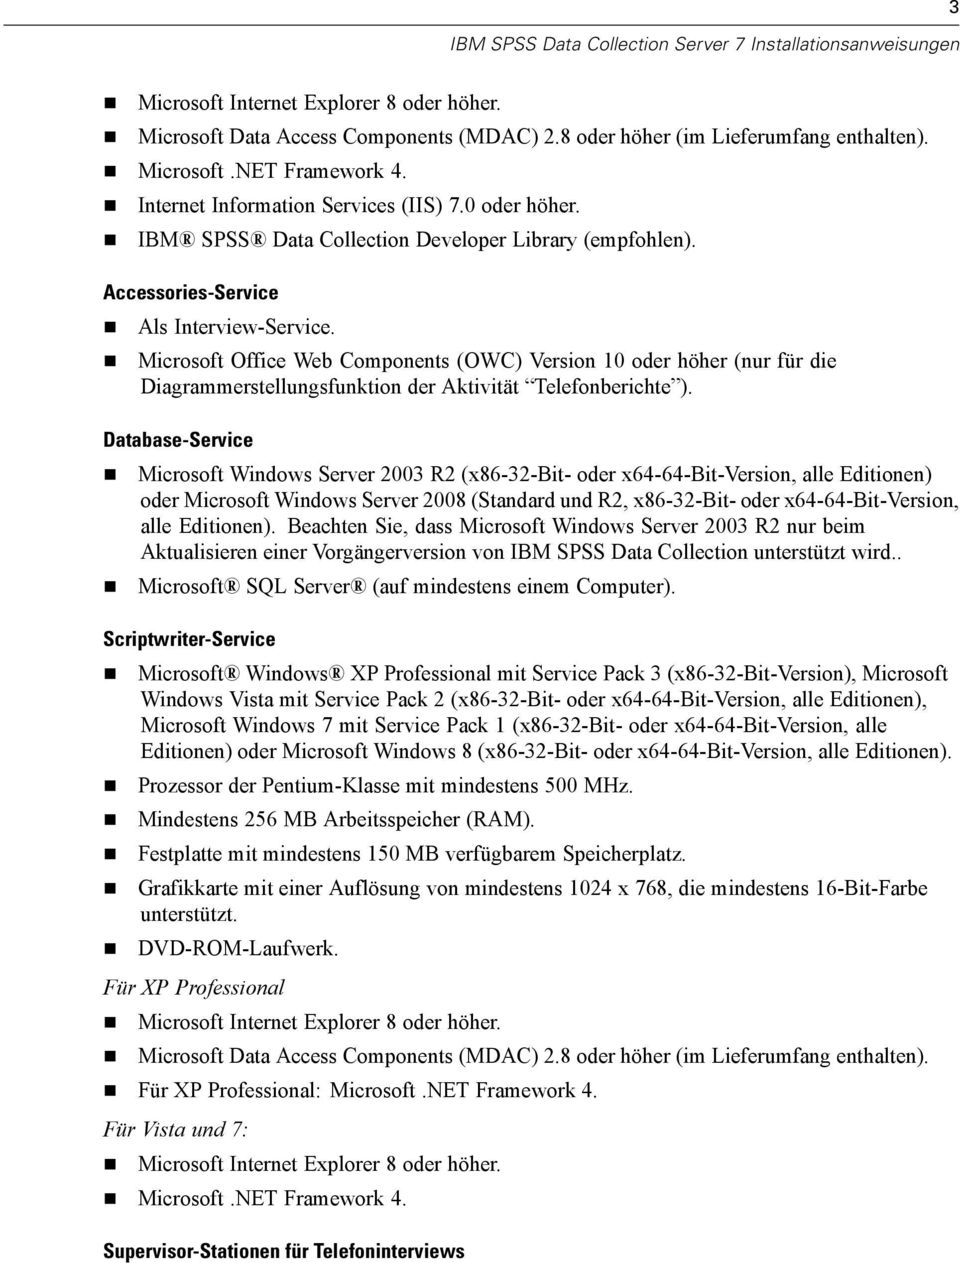 Microsoft Office Web Components (OWC) Version 10 oder höher (nur für die Diagrammerstellungsfunktion der Aktivität Telefonberichte ).